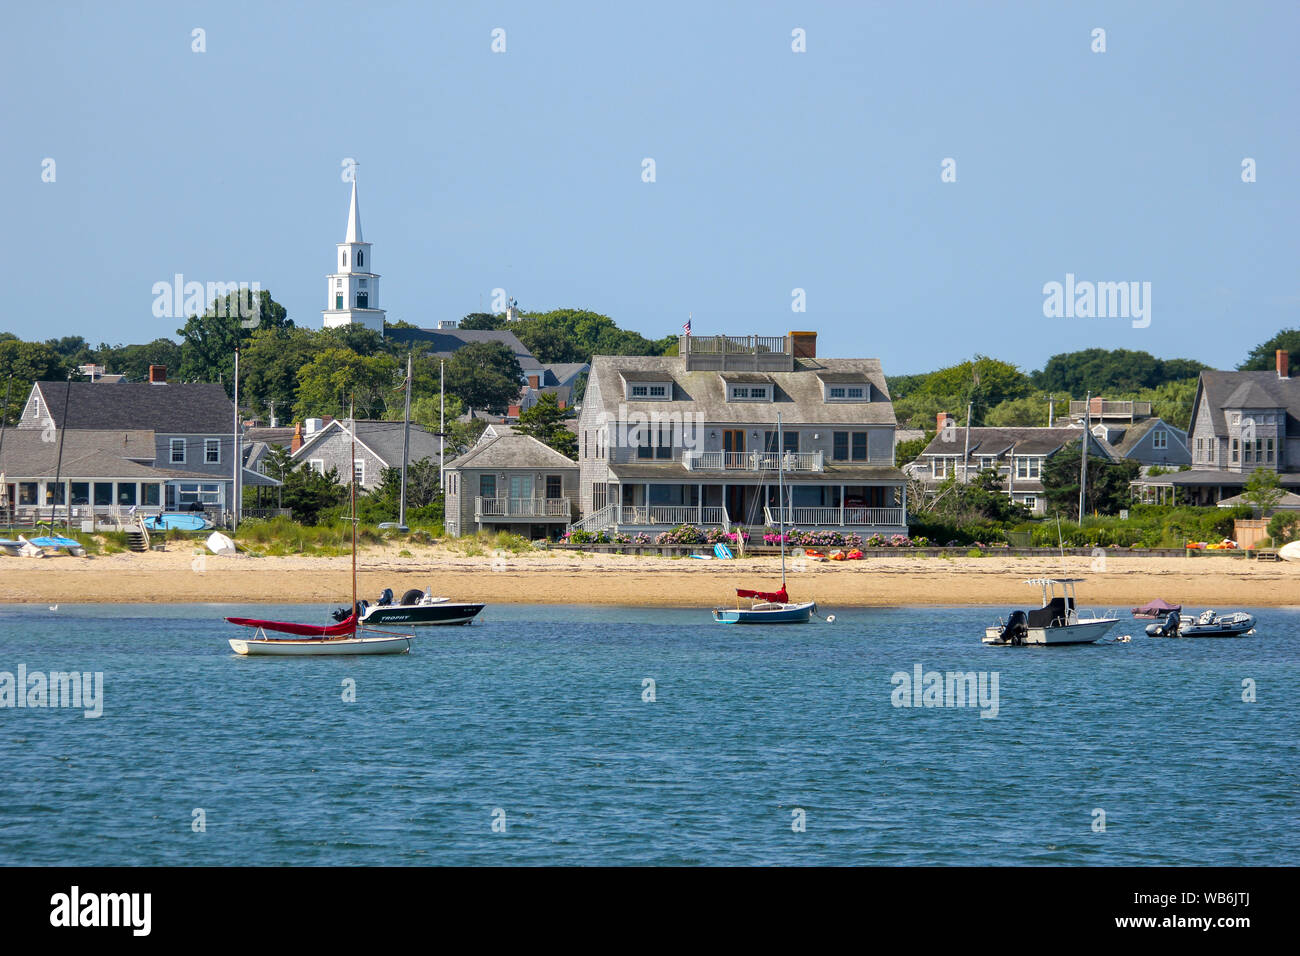 Bateaux et maisons en bord de mer, NANTUCKET, Massachusetts, United States Banque D'Images